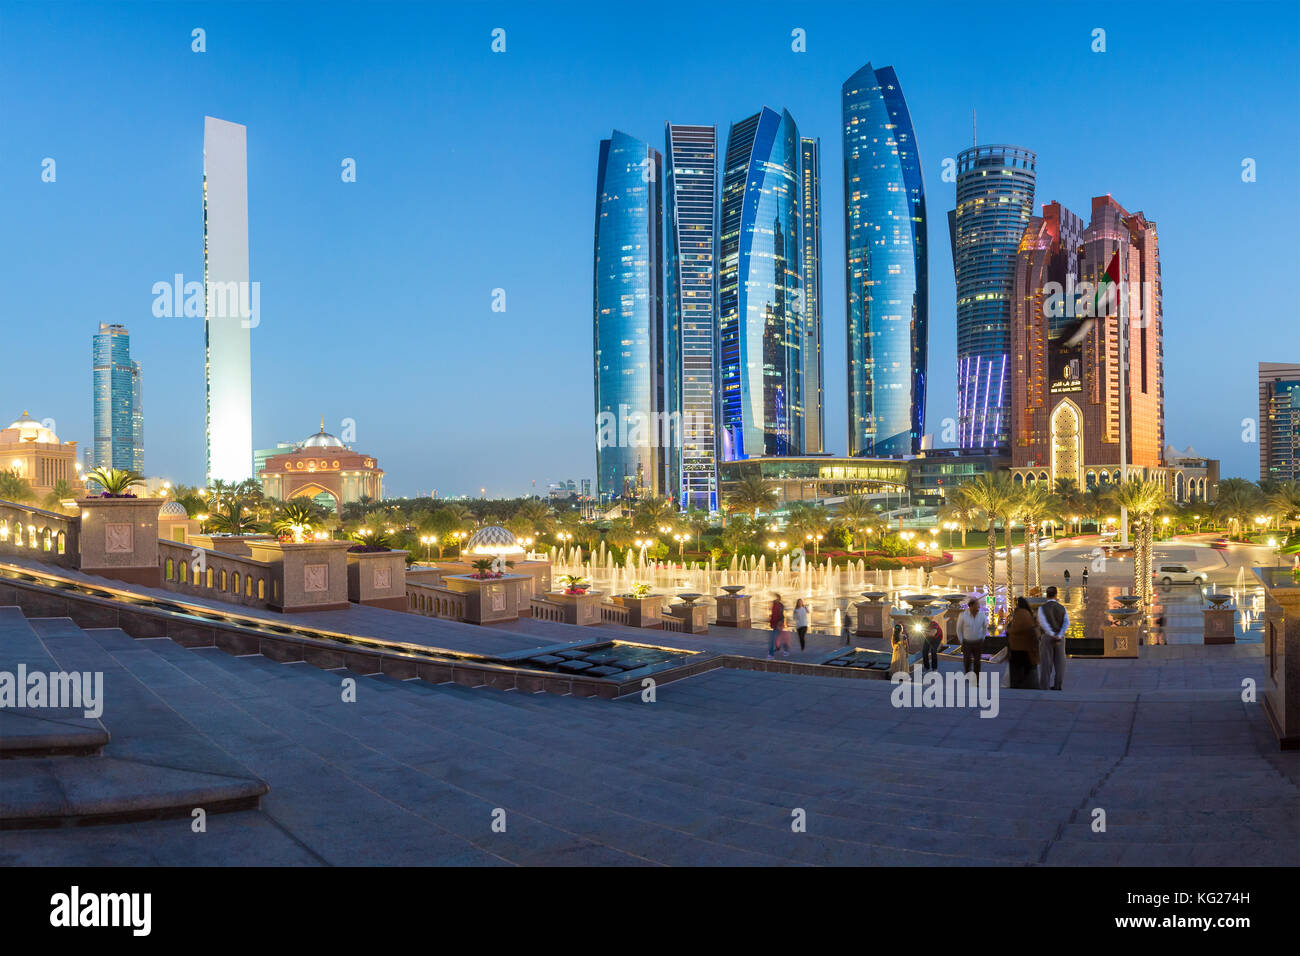 Tours Etihad vues au-dessus des fontaines de l'Emirates Palace Hôtel, Abu Dhabi, Emirats Arabes Unis, moyen-Orient Banque D'Images